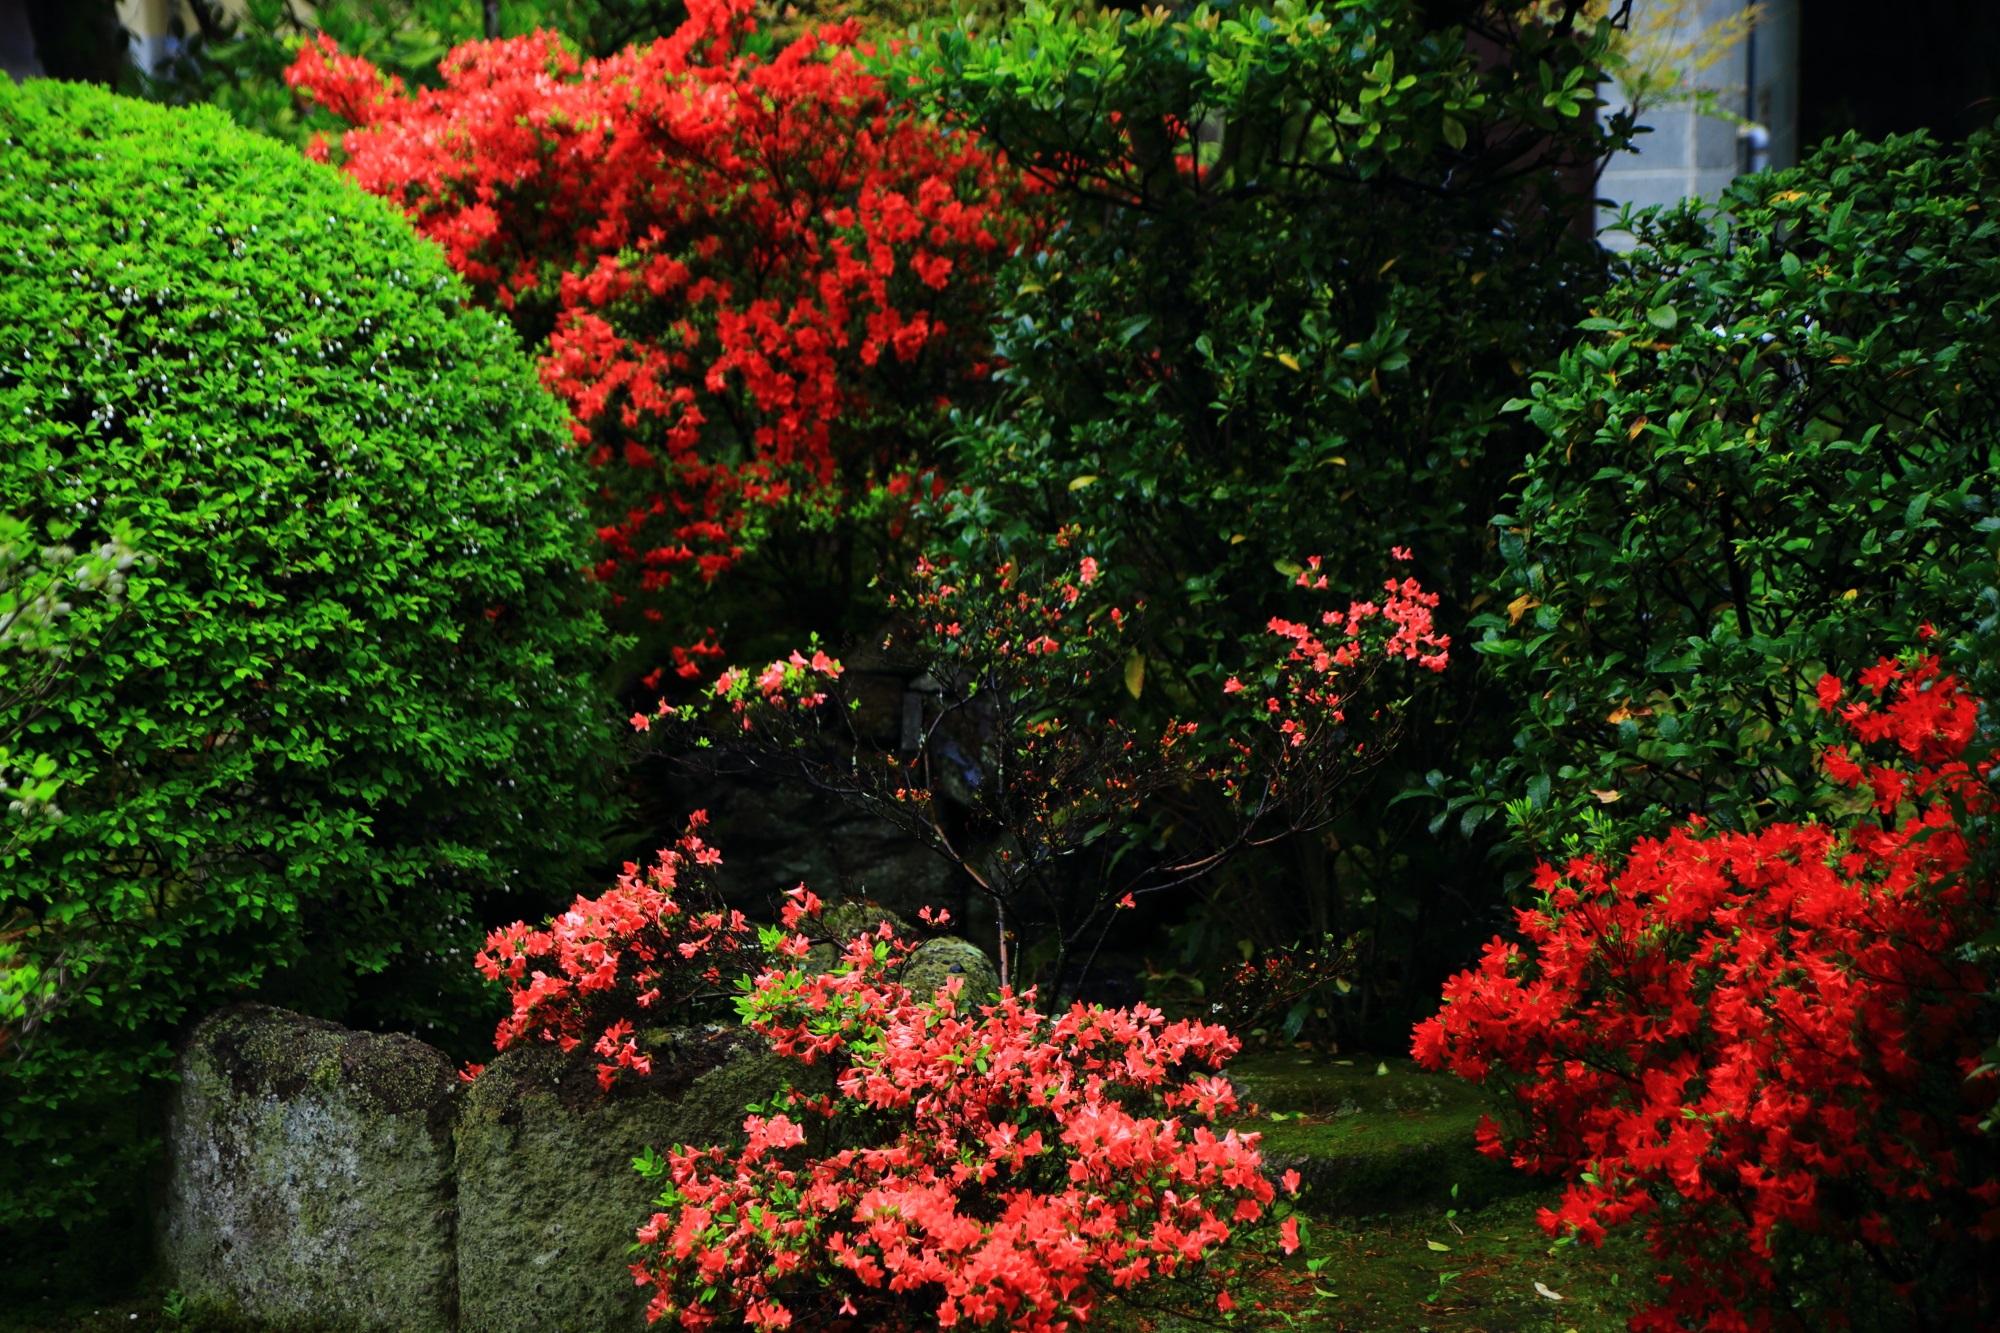 鮮やかな緑の刈り込みと鮮烈な赤やピンクの花の見事なコントラスト